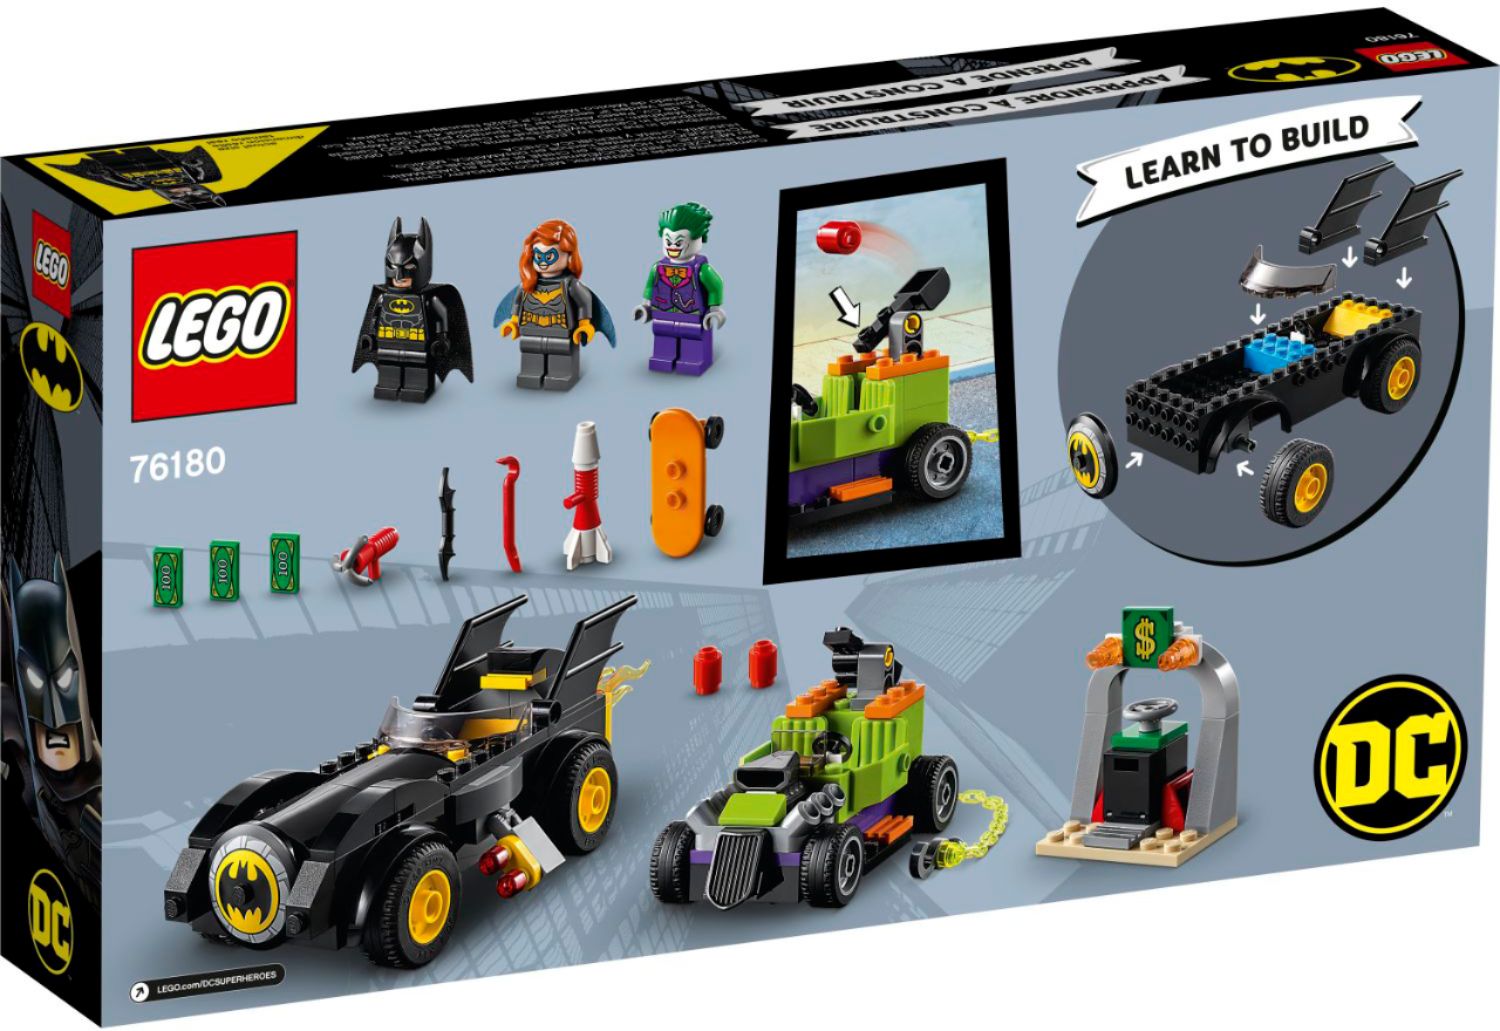 LEGO DC Batmobile: Batman vs. The Joker Chase Super Hero Toy 76224 6453468  - Best Buy